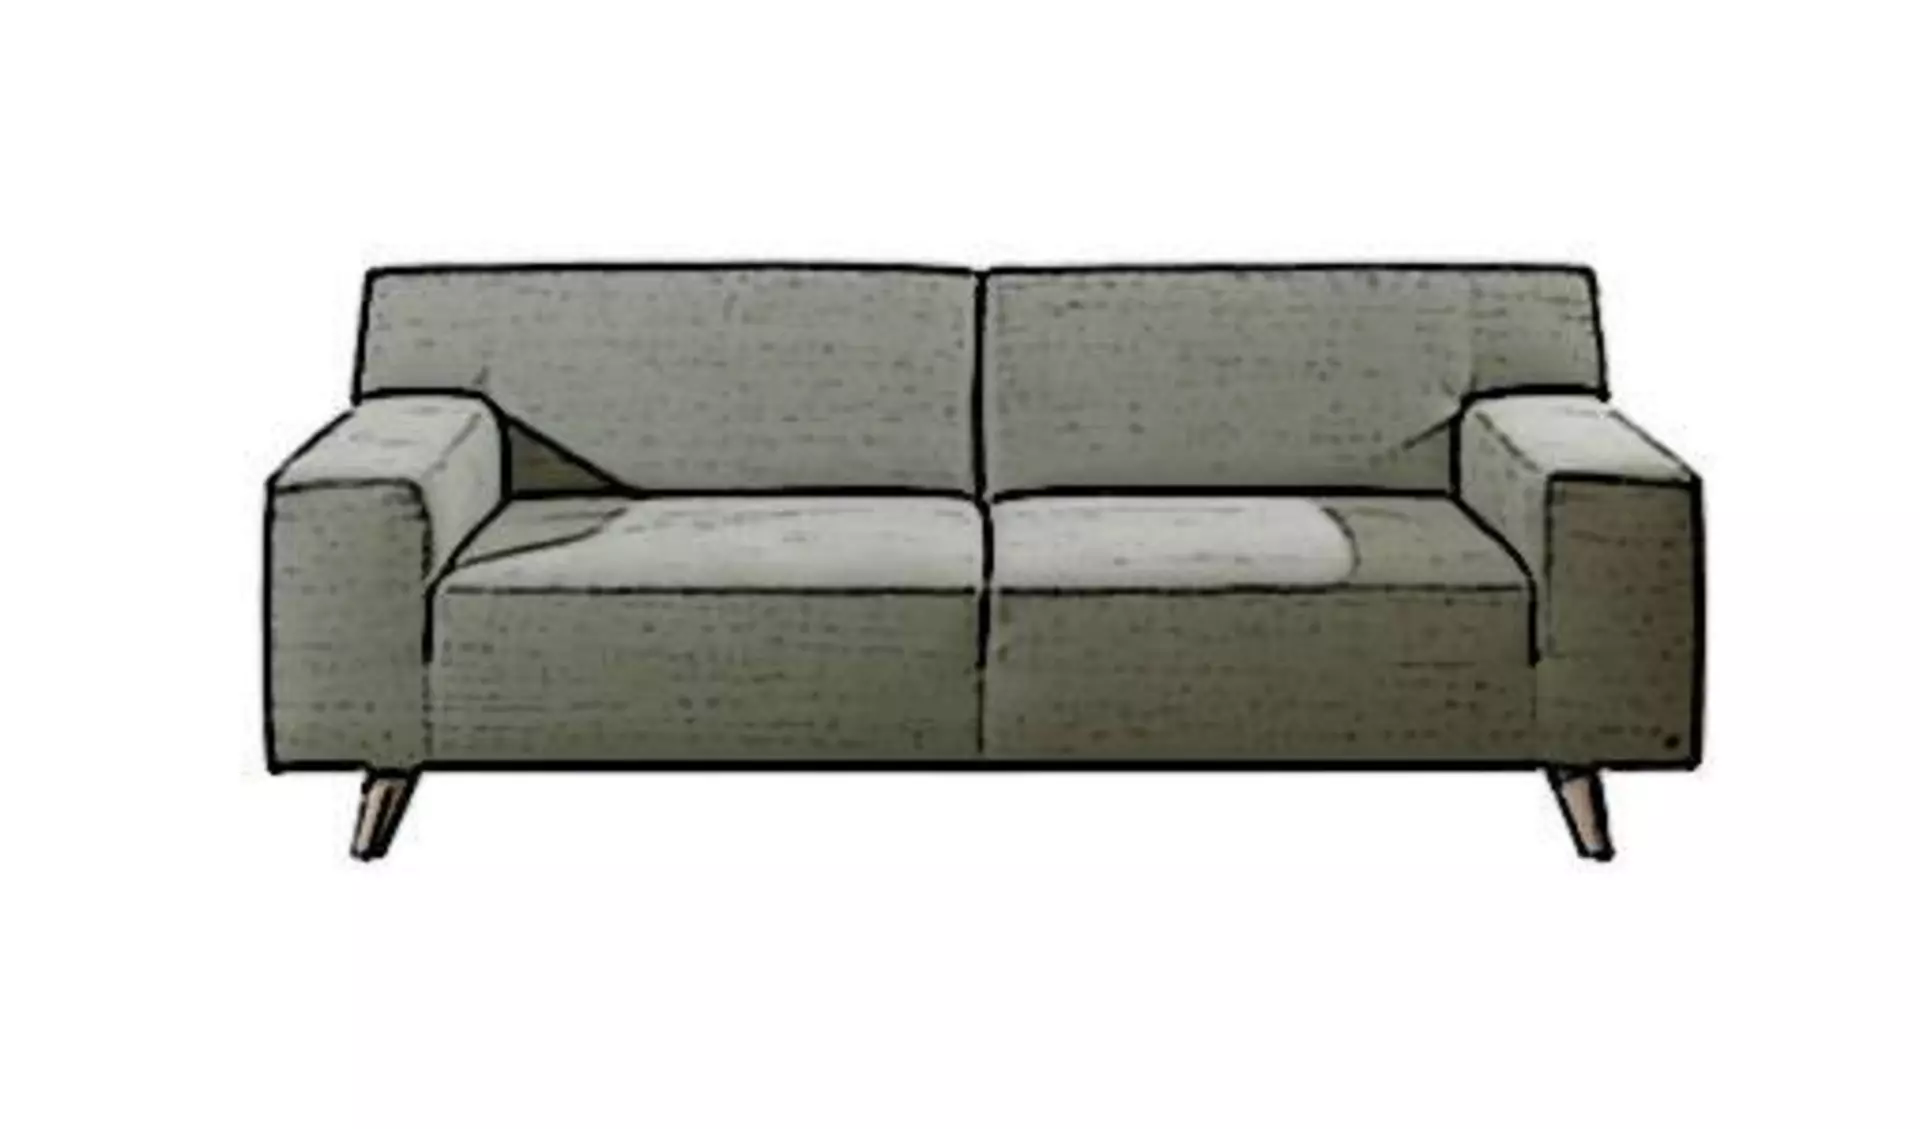 Zweisitzersofa mit grauem Stoffbezug als Synonym für alle Einzelsofas innerhalb der Kategorie "Sofa und Couches".